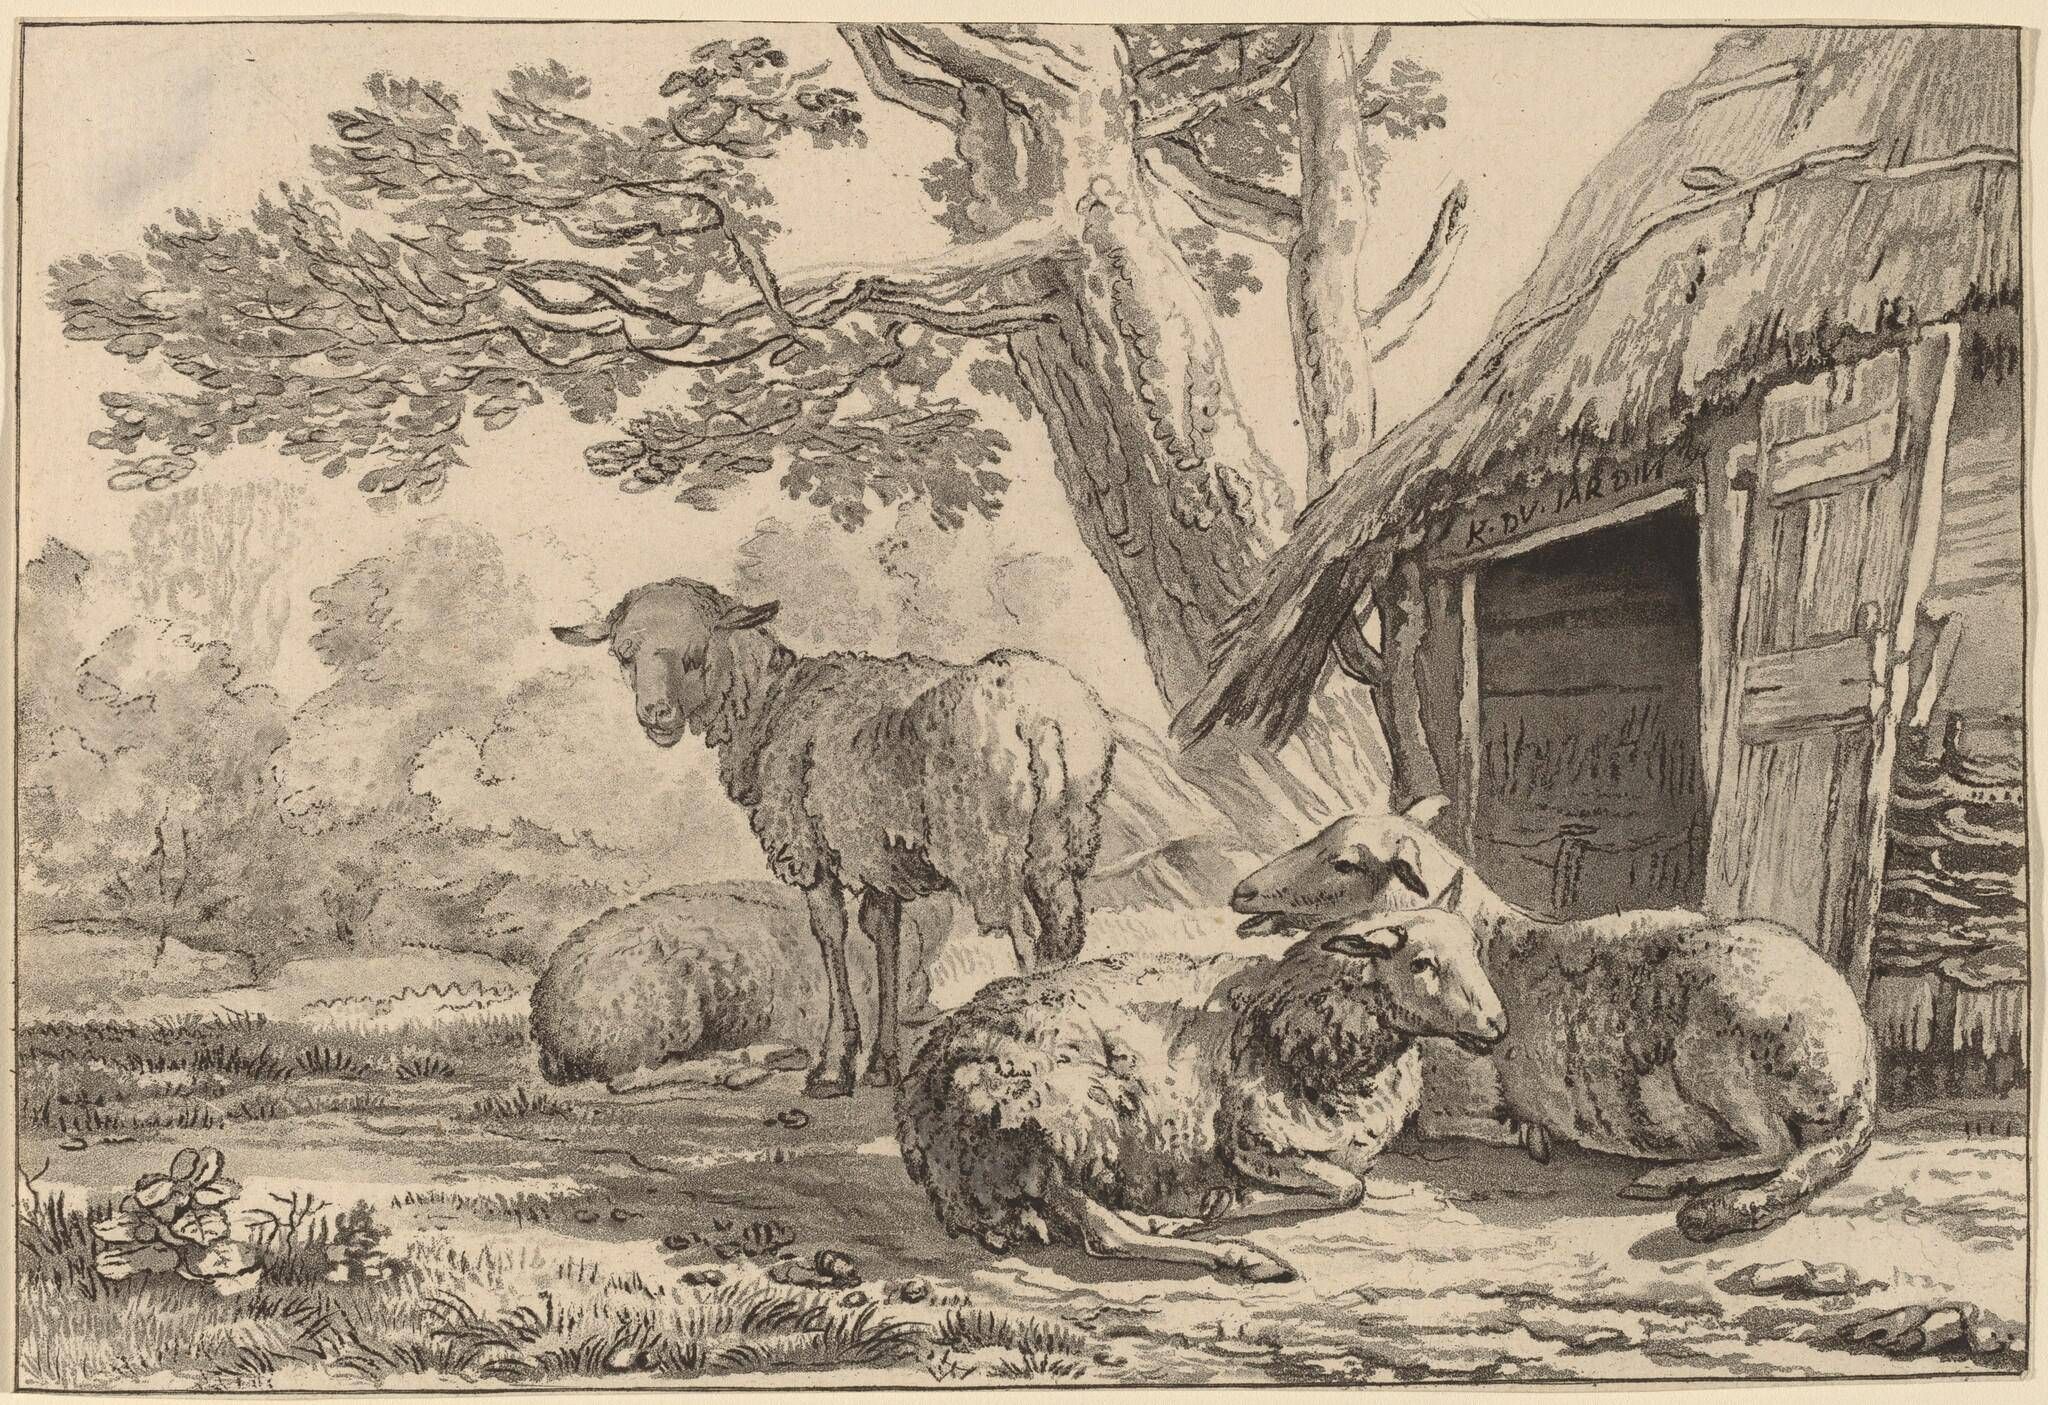 Sheepcote